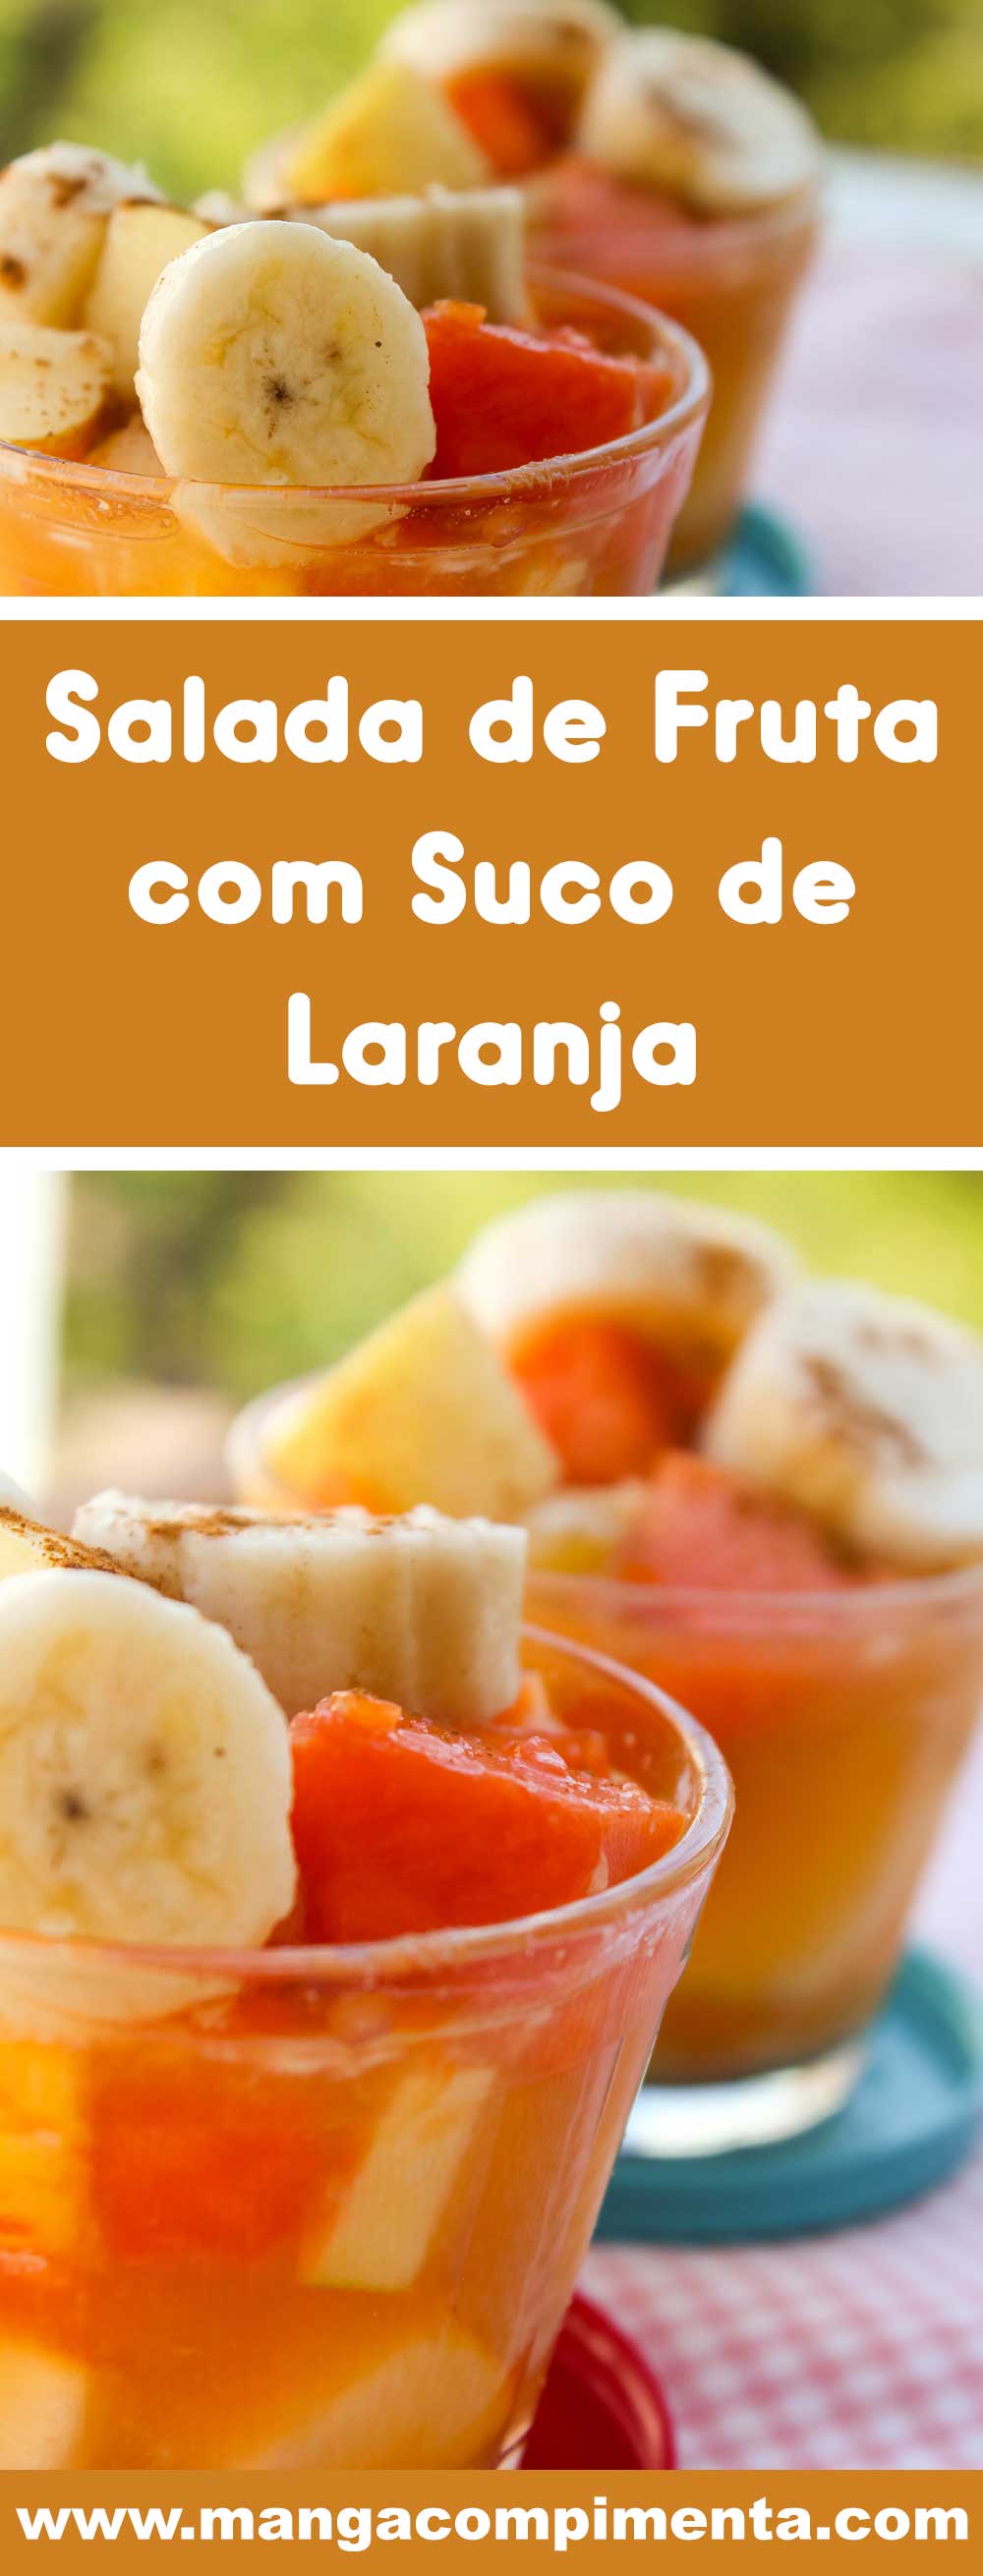 Receita de Salada de Frutas com Suco de Laranja - uma sobremesa deliciosa para servir a família no verão.